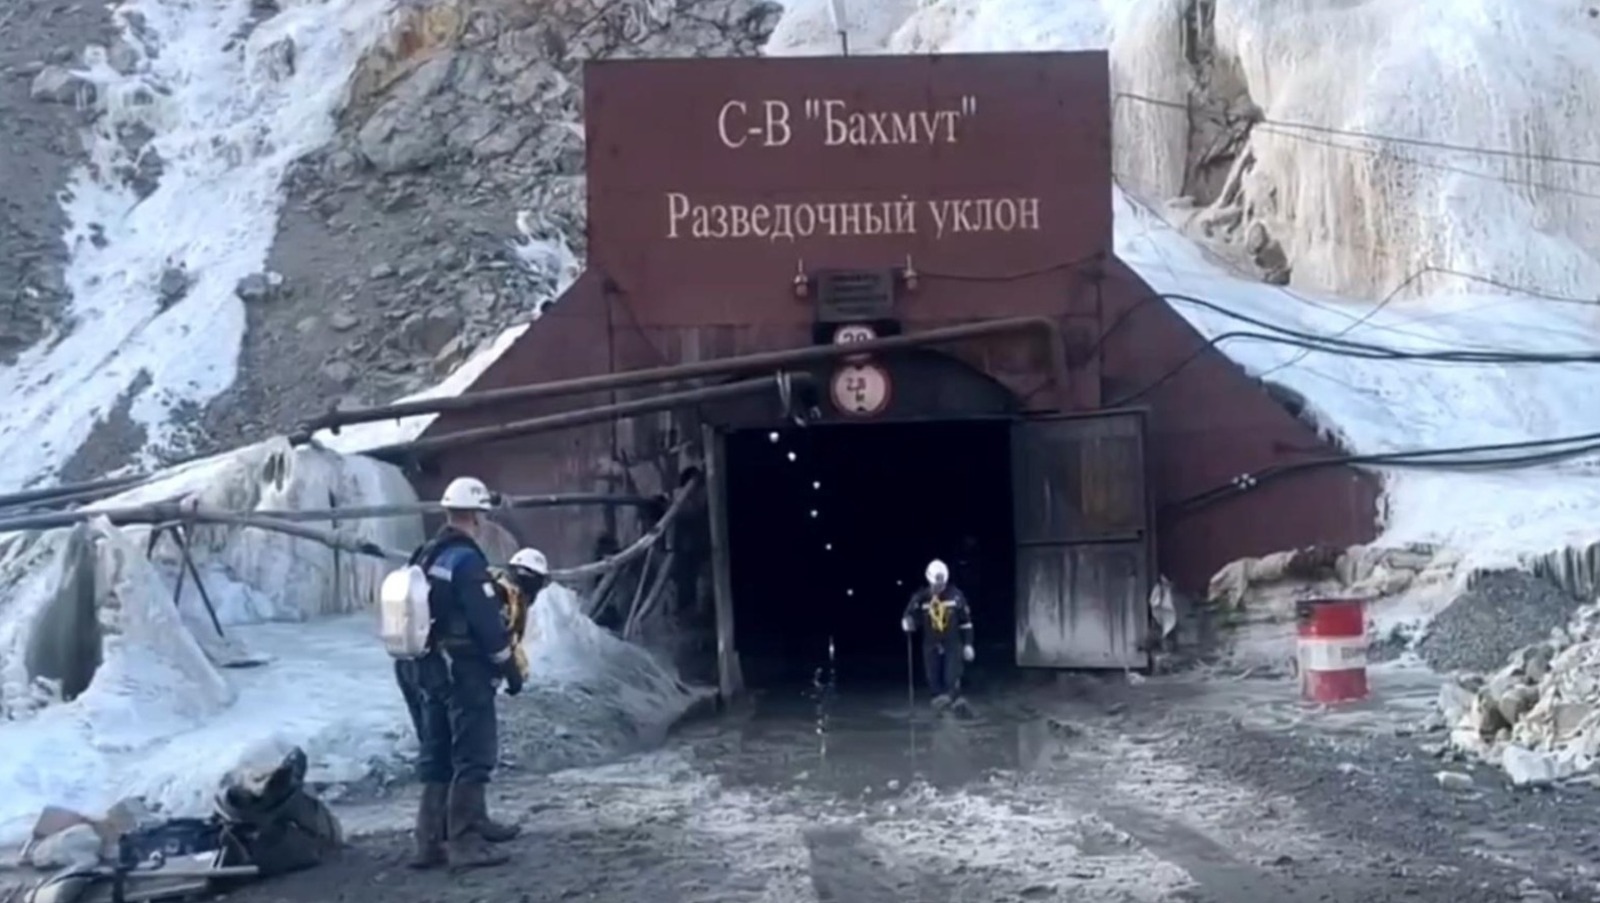 В Башкирии увековечат память погибших на руднике «Пионер» горняков из Сибая